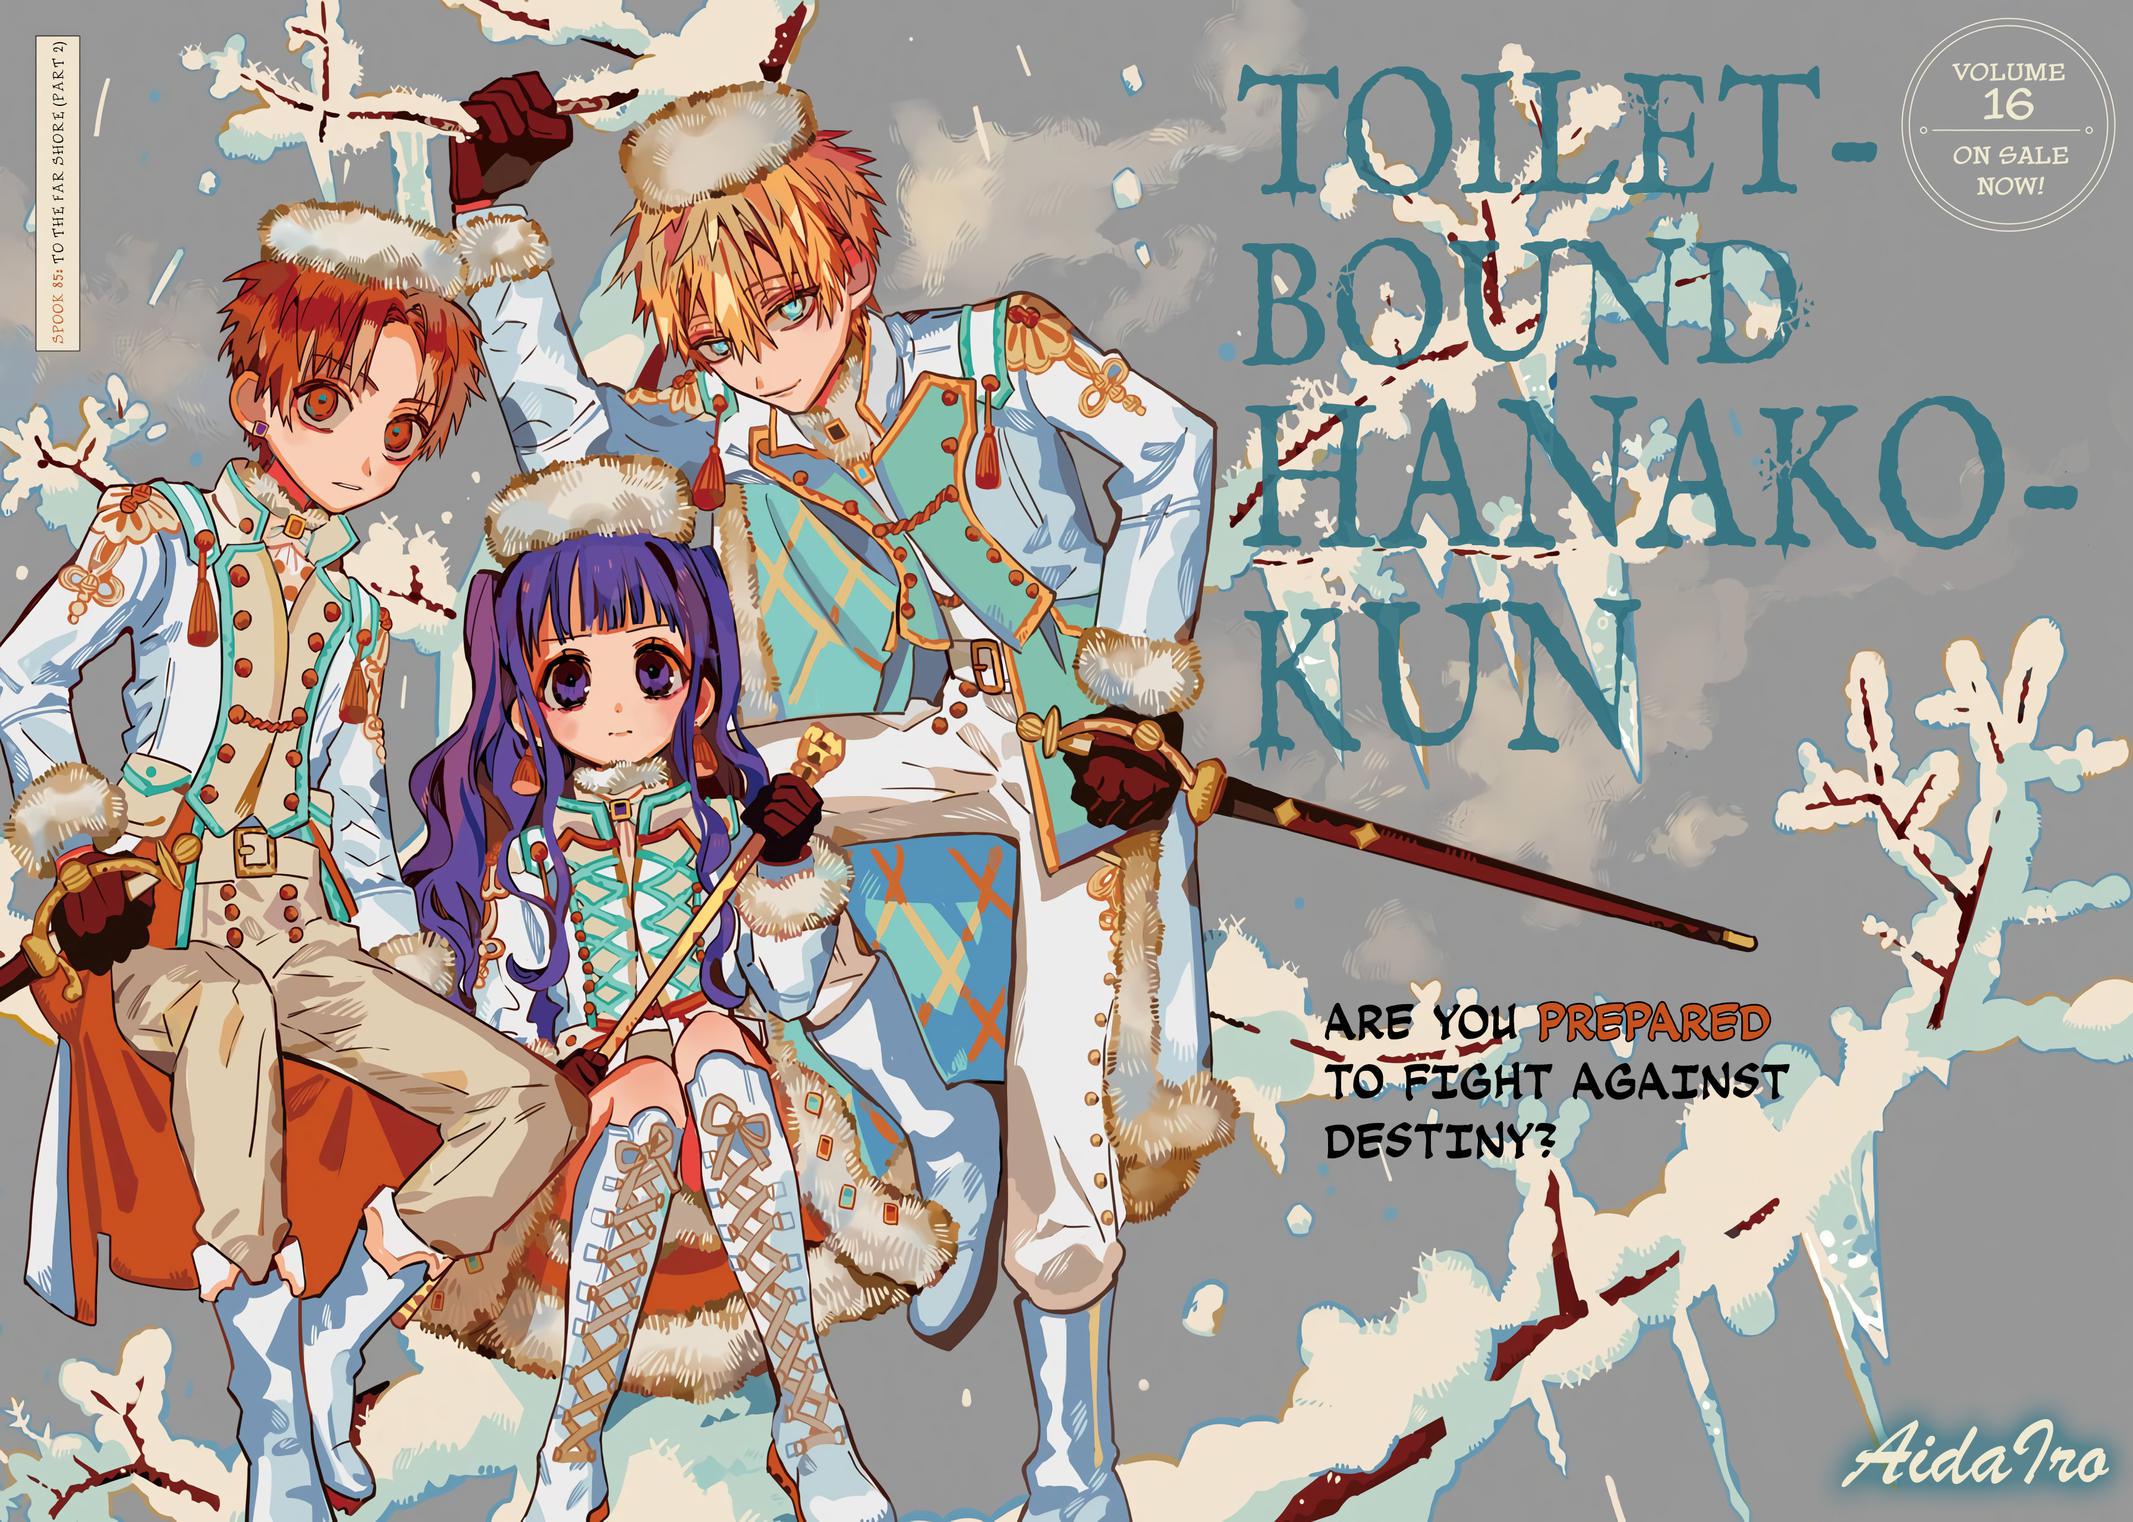 Toilet-bound Hanako-kun chapter 85, Jibaku Shounen Hanako-kun Chapter 85